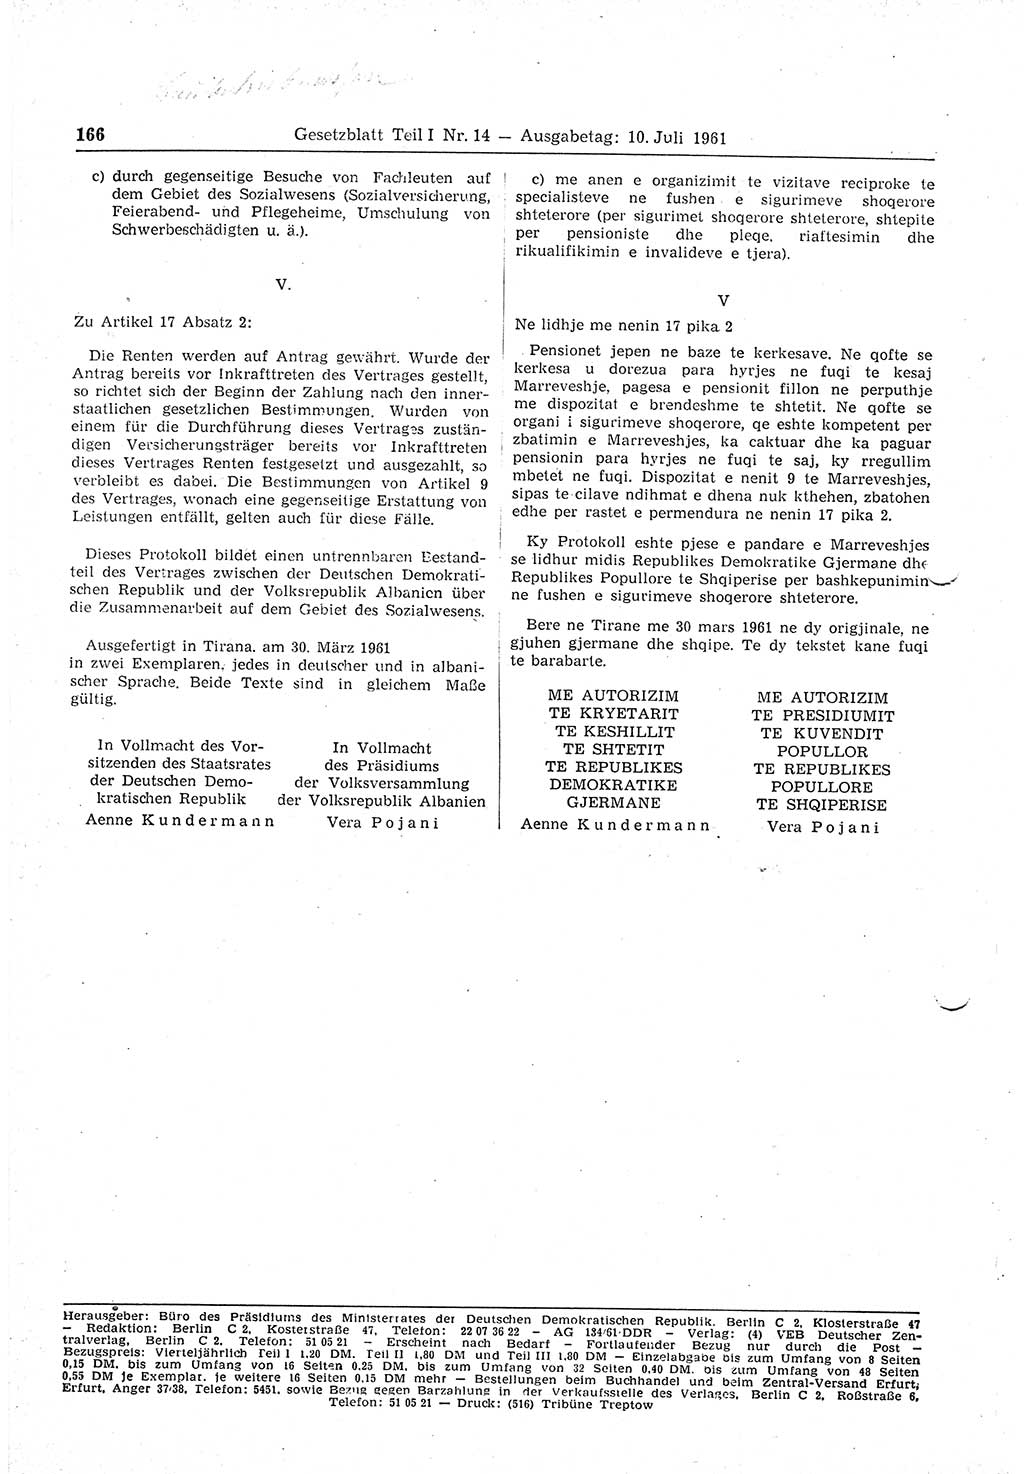 Gesetzblatt (GBl.) der Deutschen Demokratischen Republik (DDR) Teil Ⅰ 1961, Seite 166 (GBl. DDR Ⅰ 1961, S. 166)